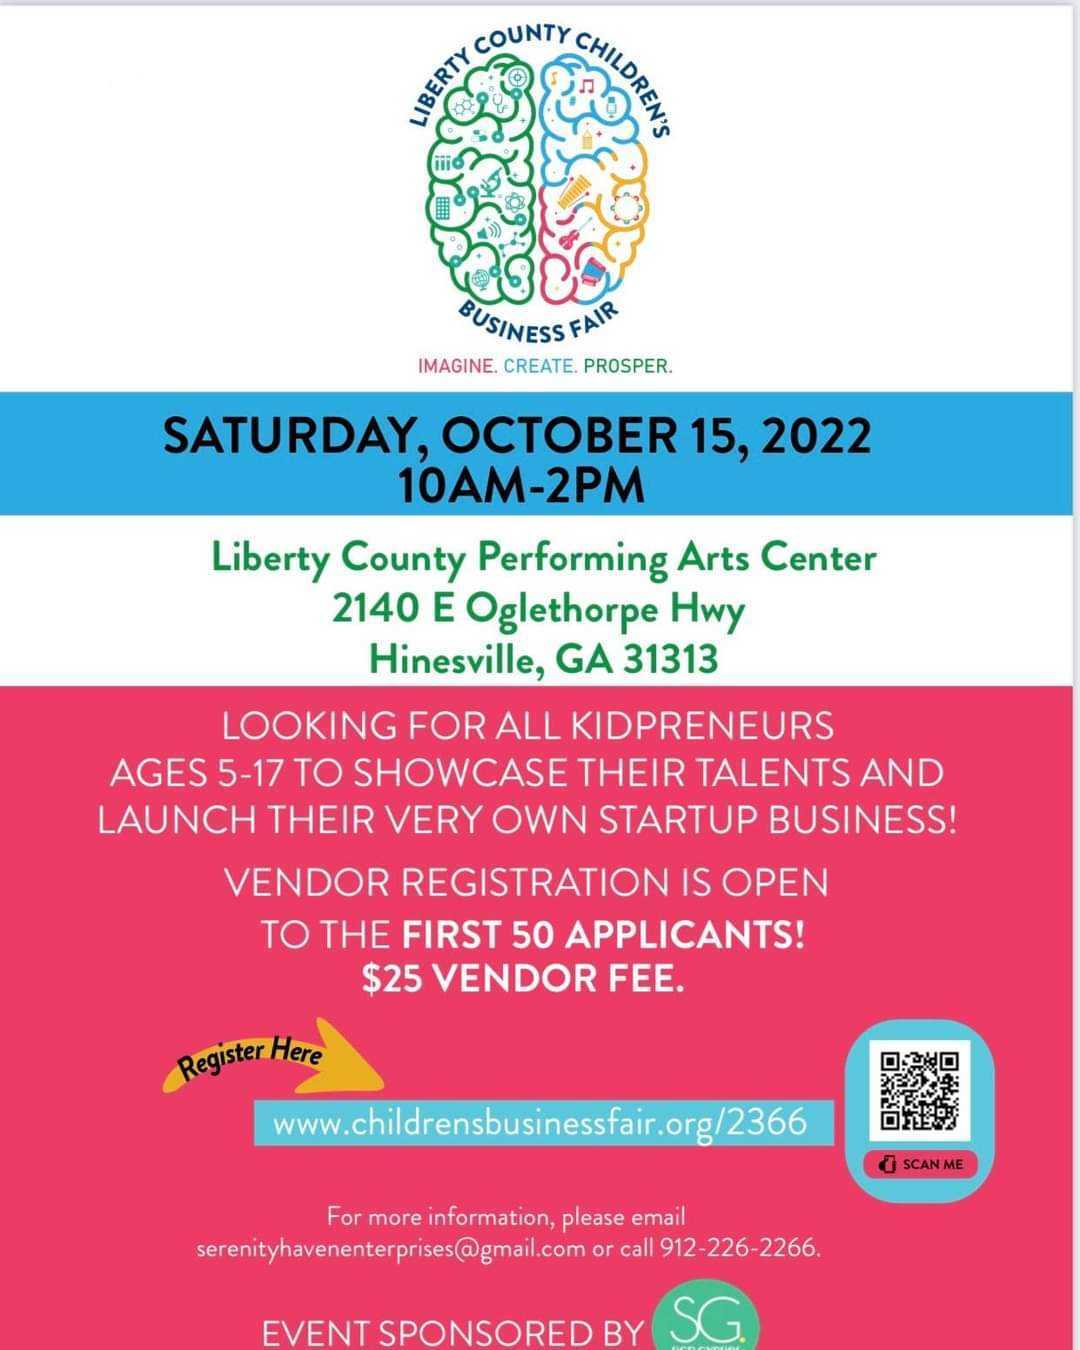 Liberty County Children's Business Fair Flyer